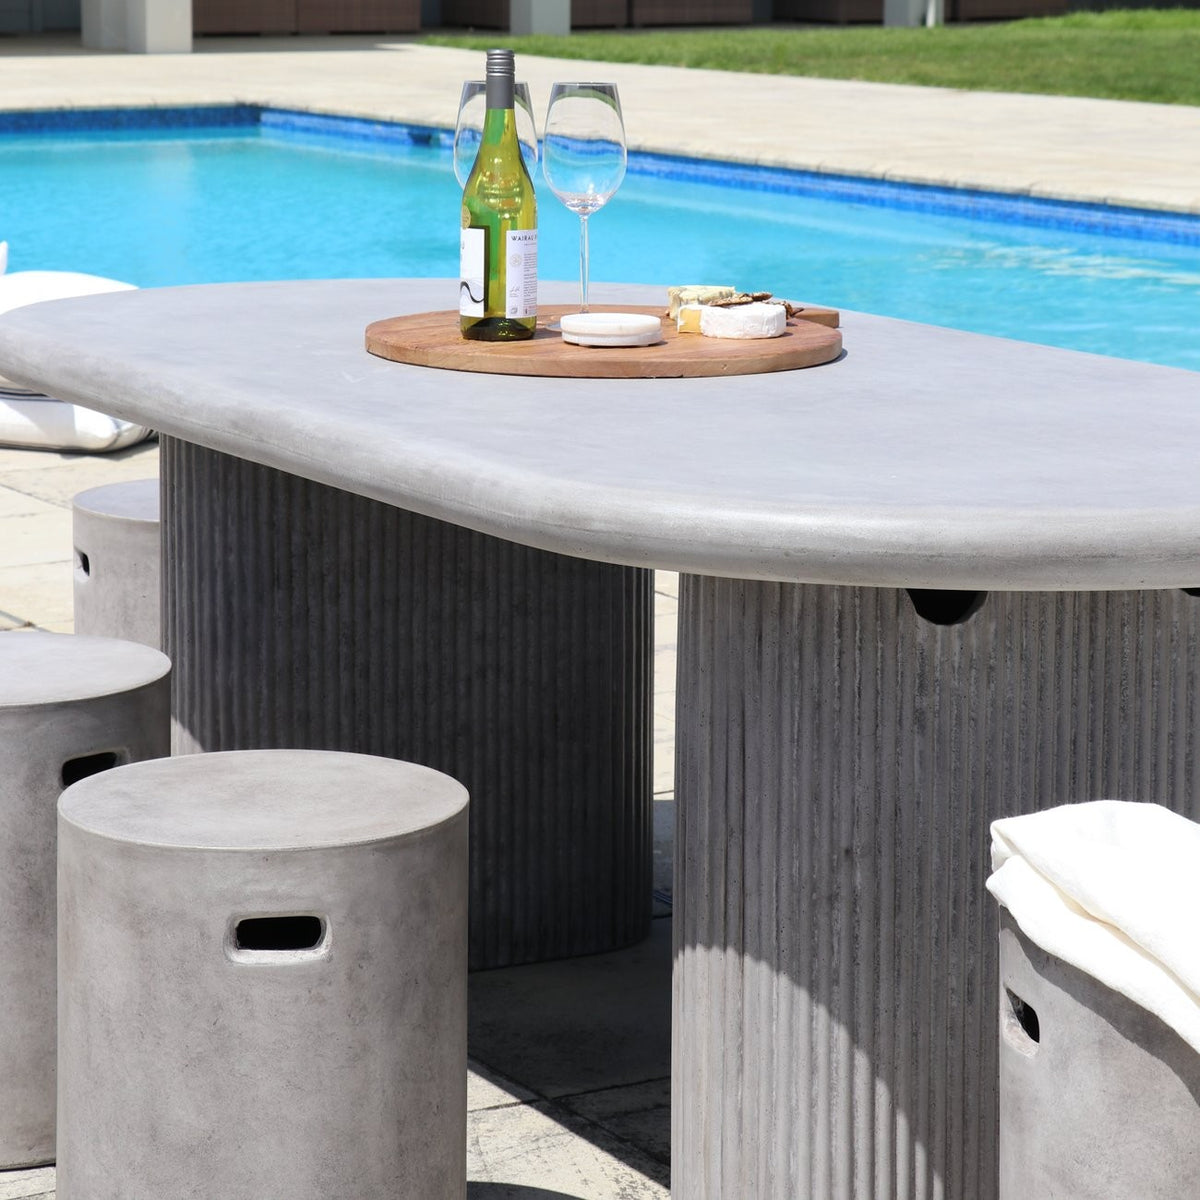 Solona Outdoor Concrete Table - Grey